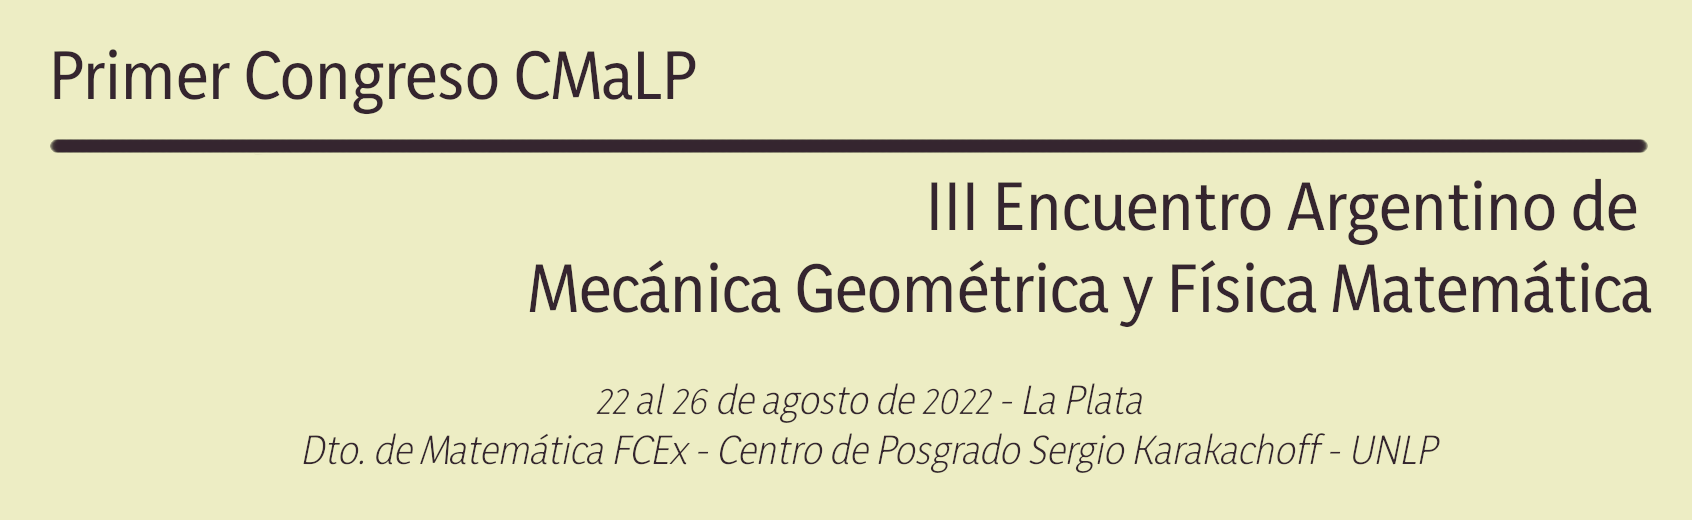 I Congreso CMaLP - III Encuentro Argentino de Mecánica Geométrica y Física Matemática Logo